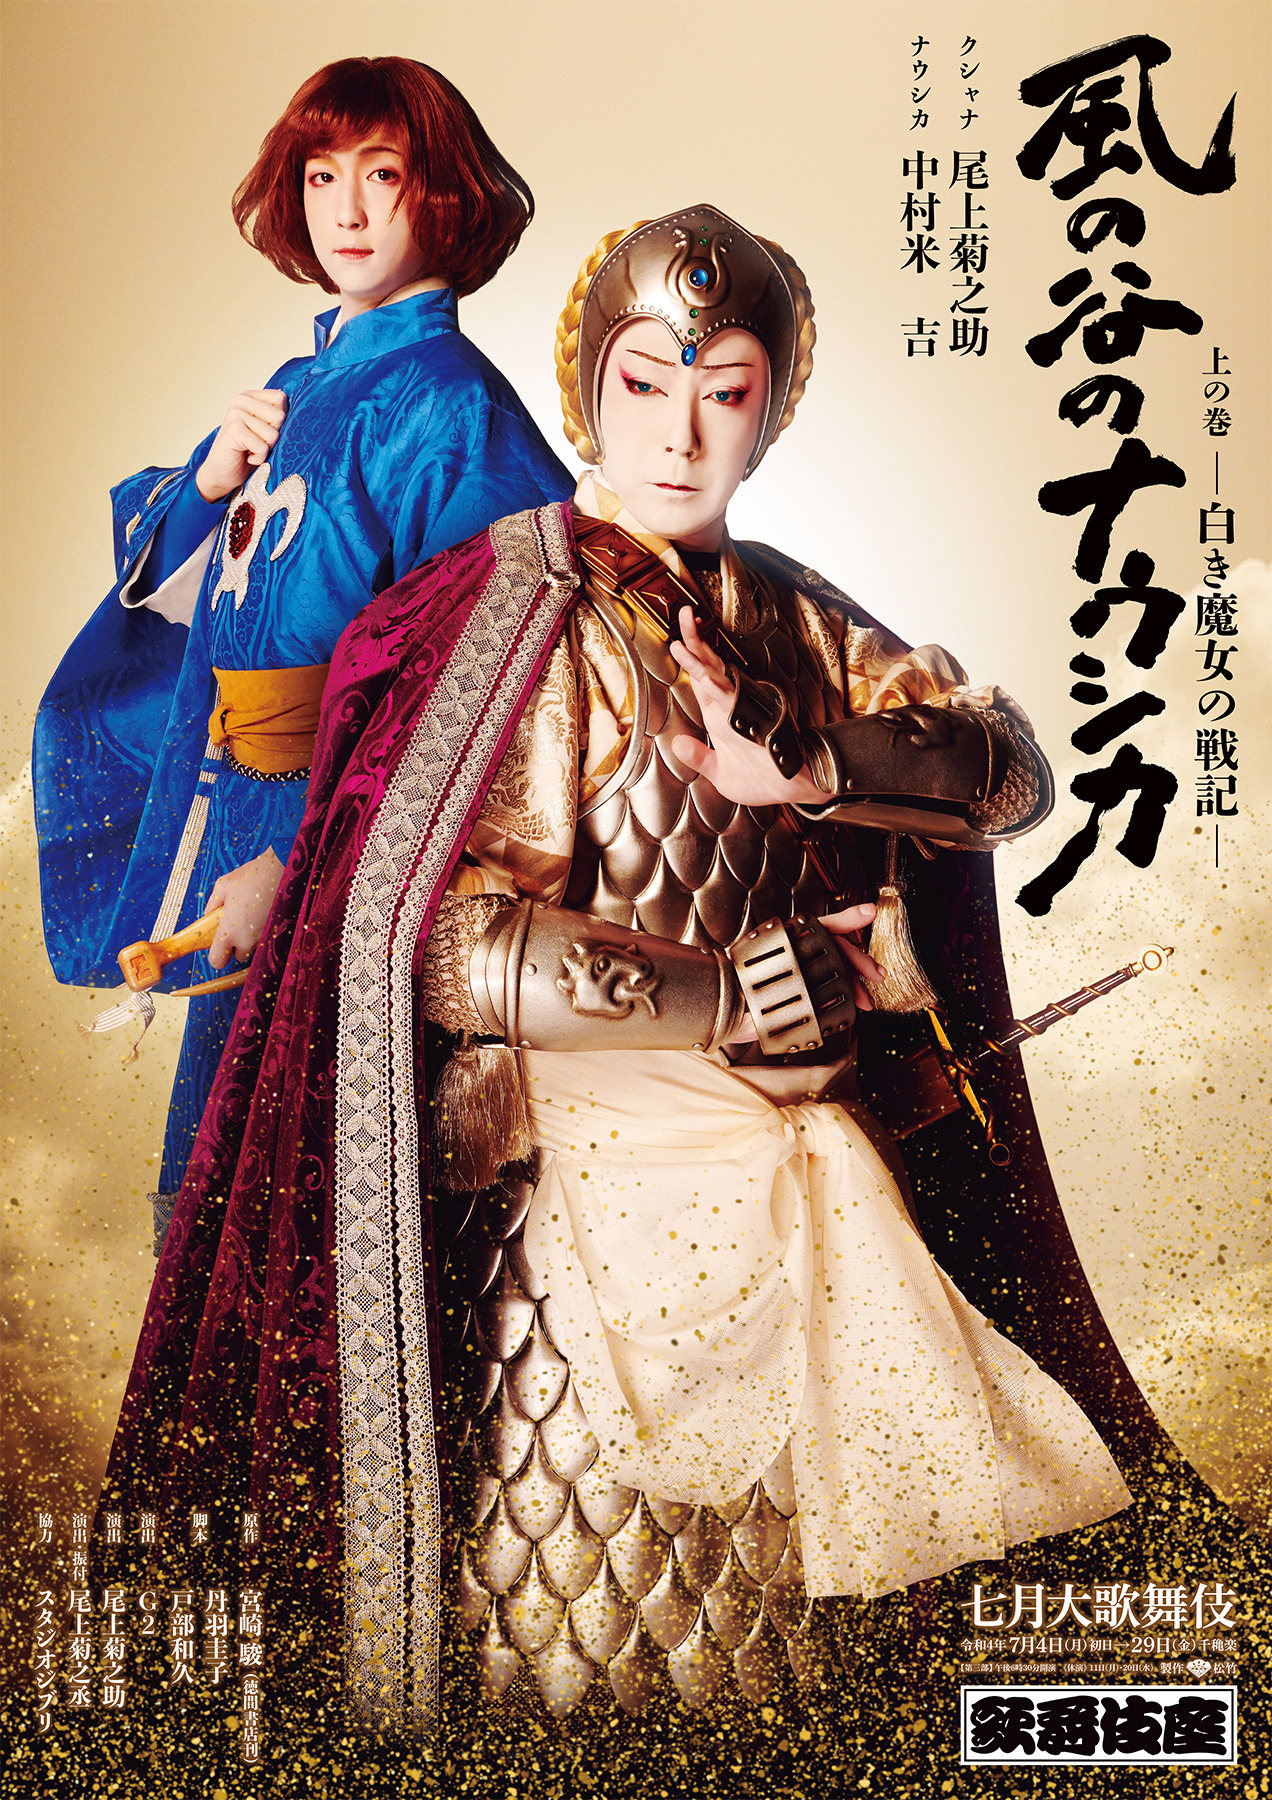 歌舞伎座「風の谷のナウシカ」特別ポスター公開 | cinemacafe.net